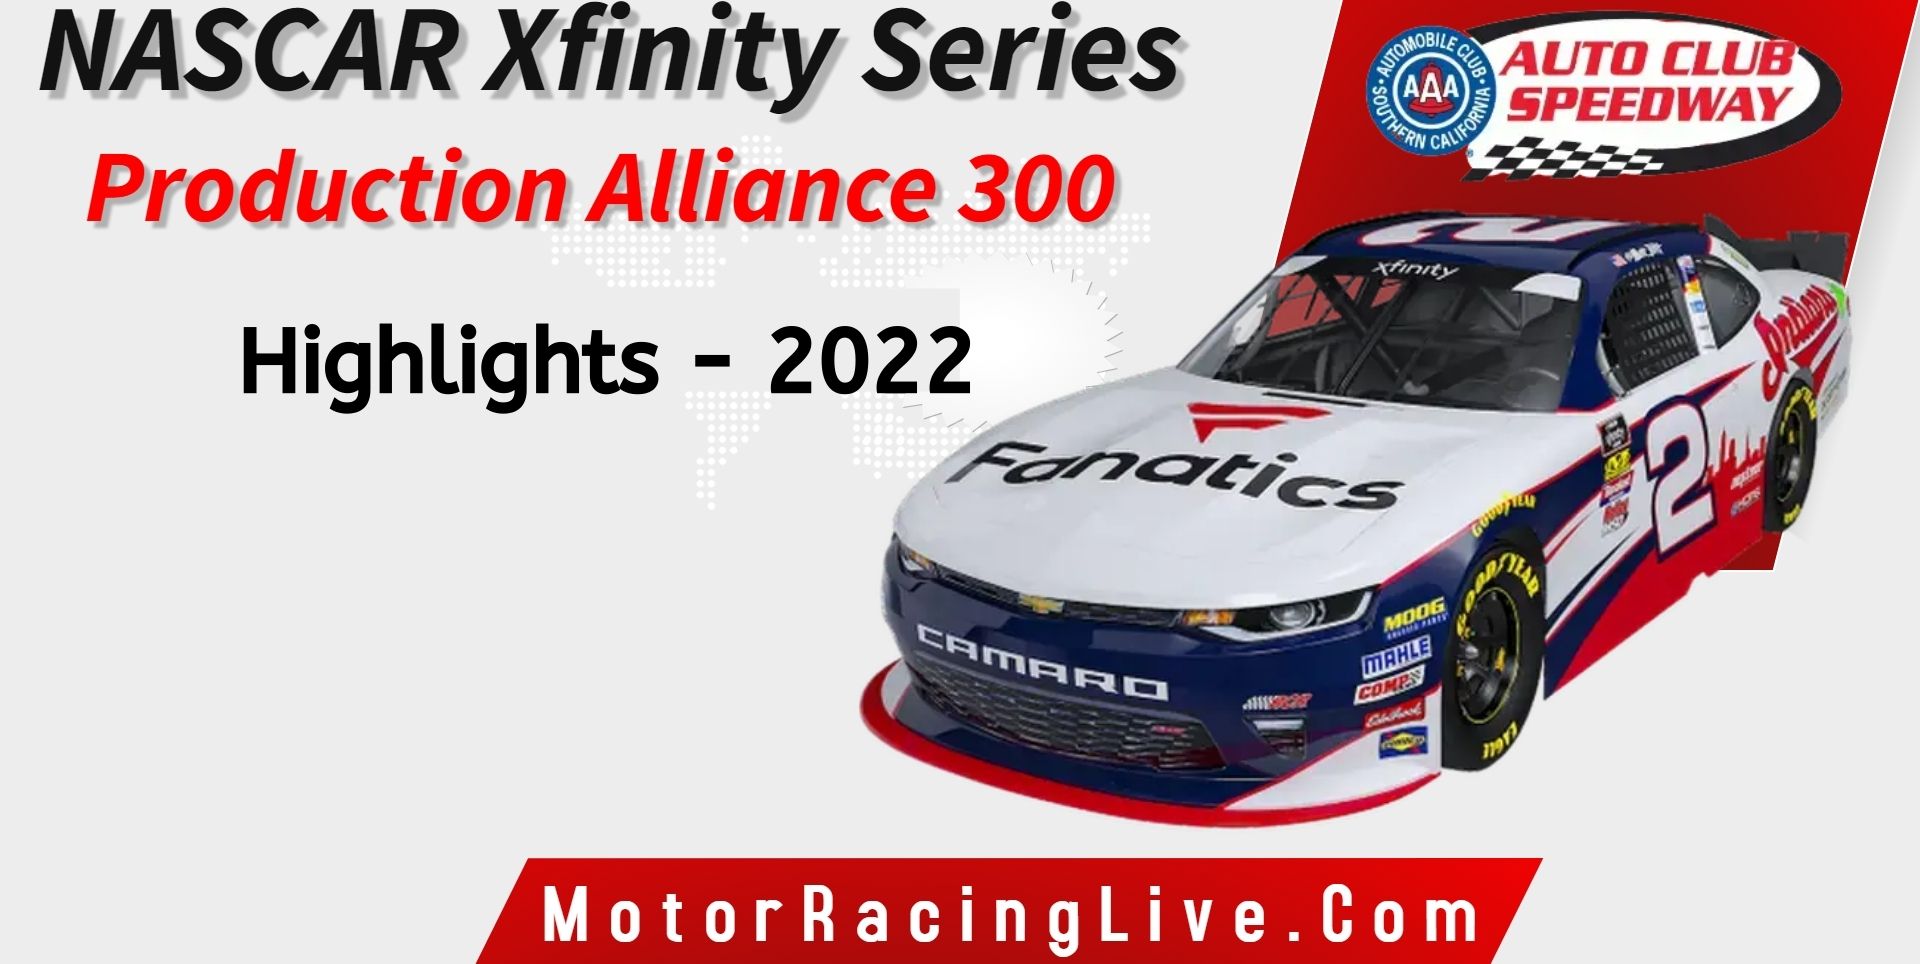 Production Alliance Group 300 Highlights 2022 NASCAR